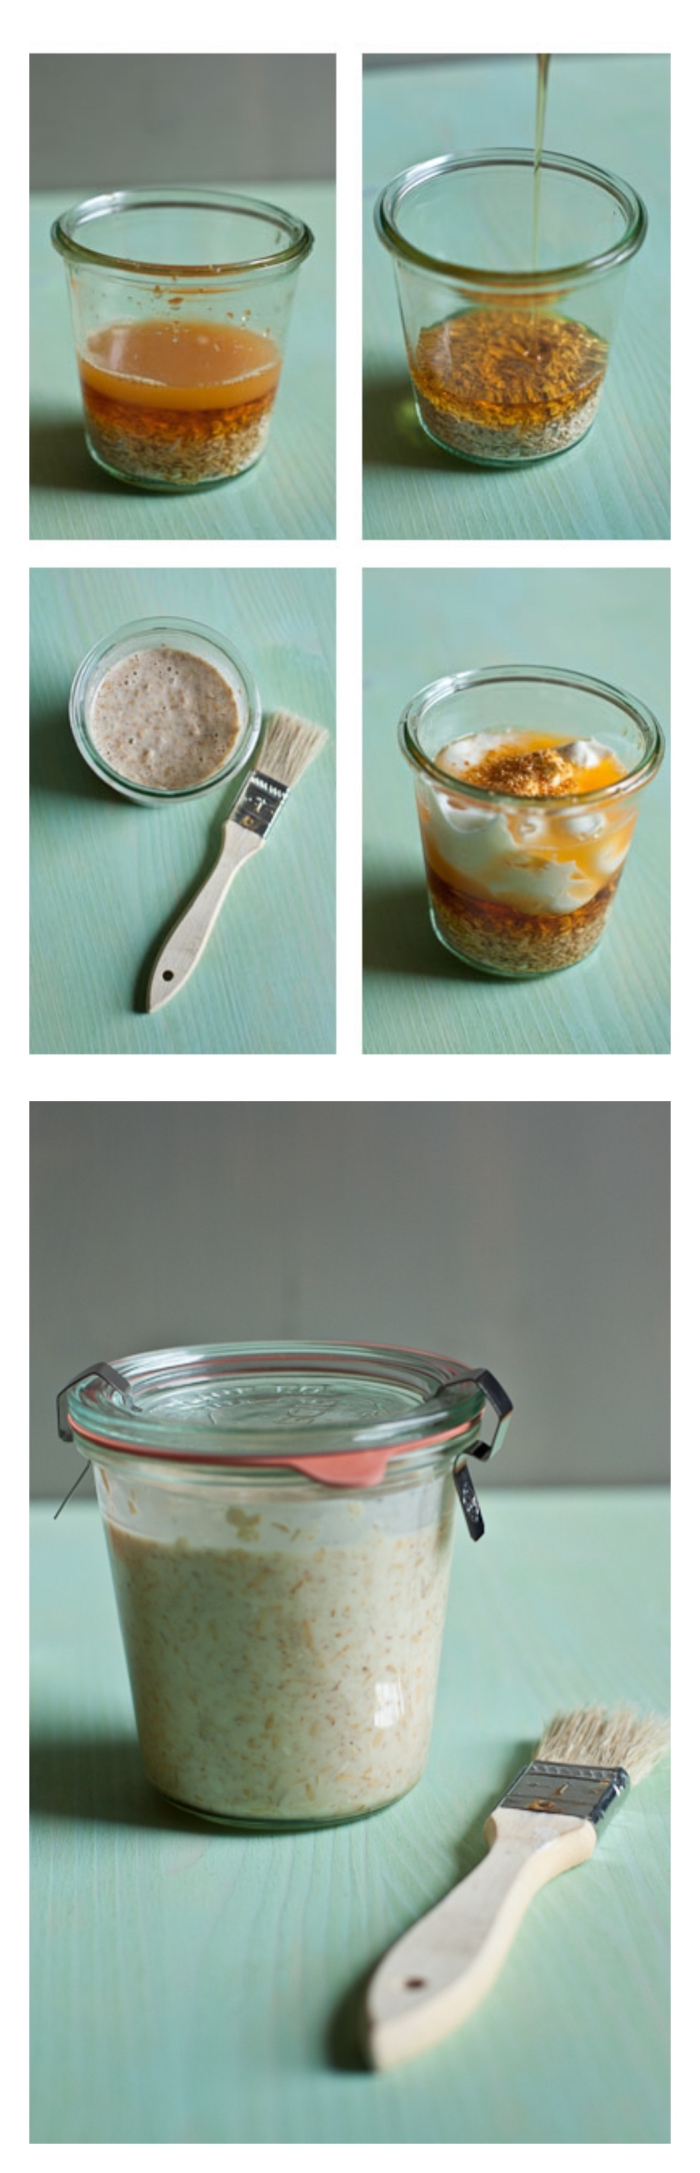 recette facile de masque hydratant maison à l'orange, flocons d'avoine, yaourt et miel qui agit aussi comme un exfoliant doux